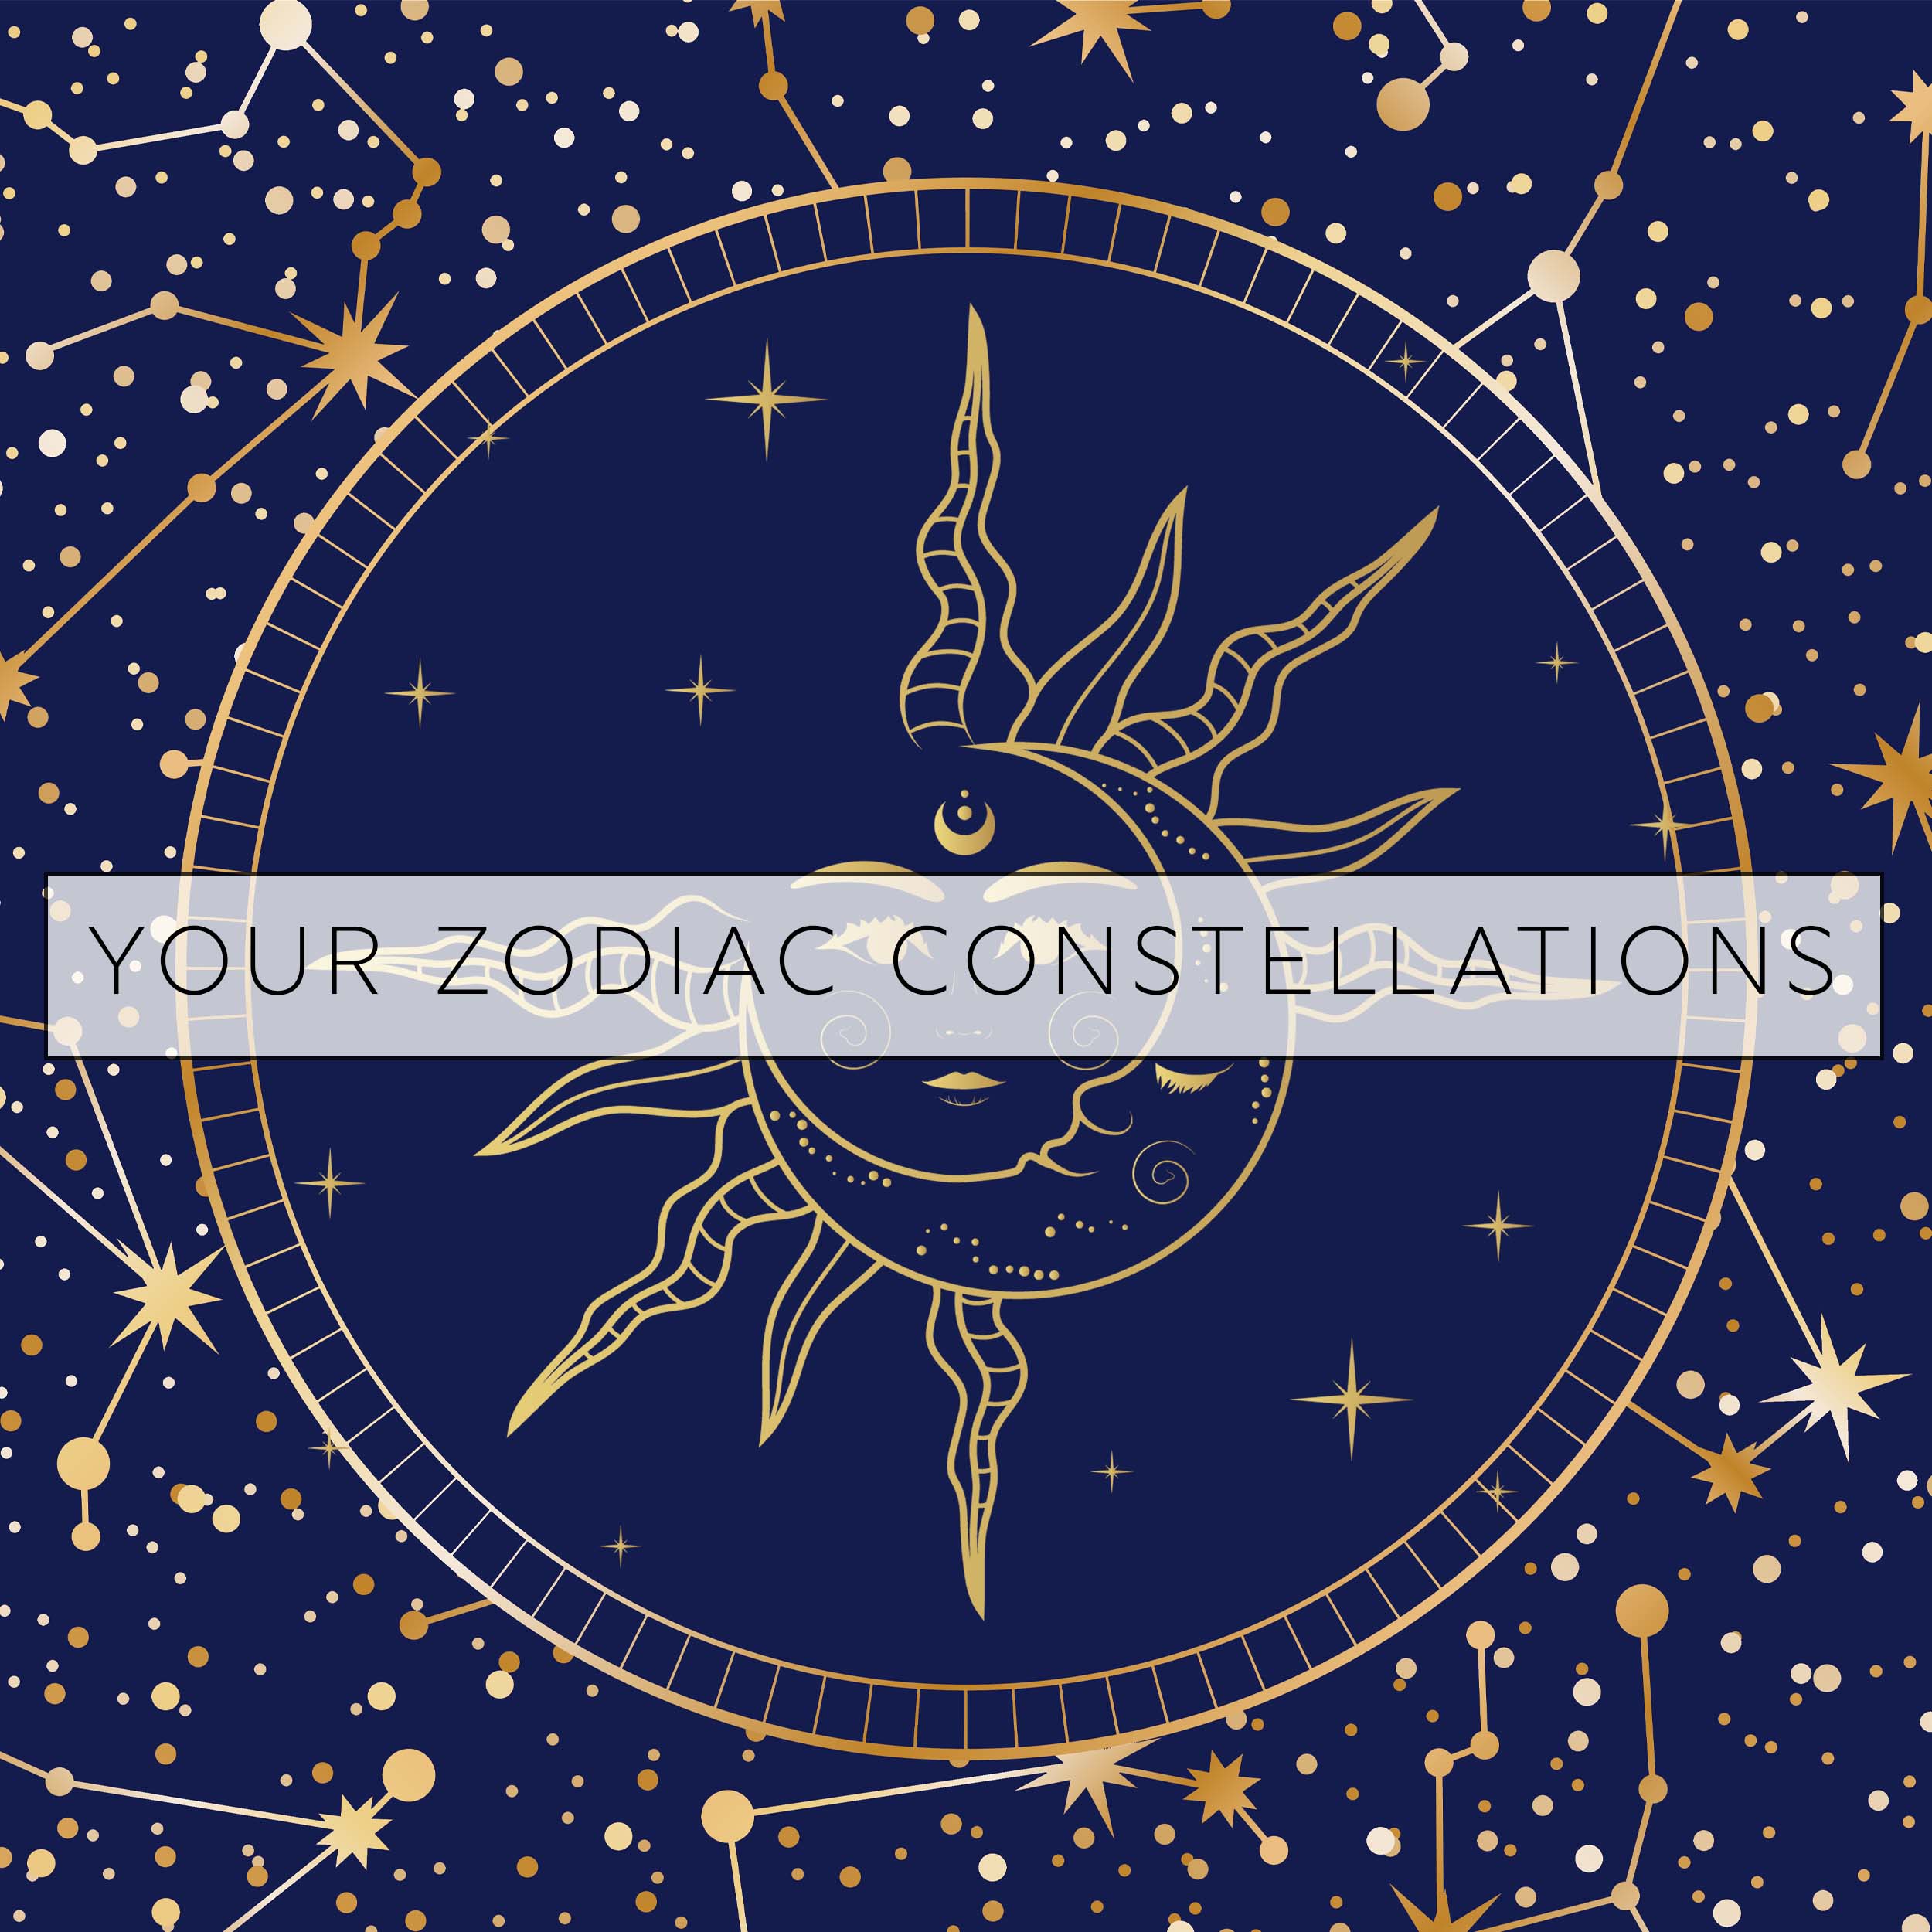 Your Zodiac Constellation - www.indieandharper.com